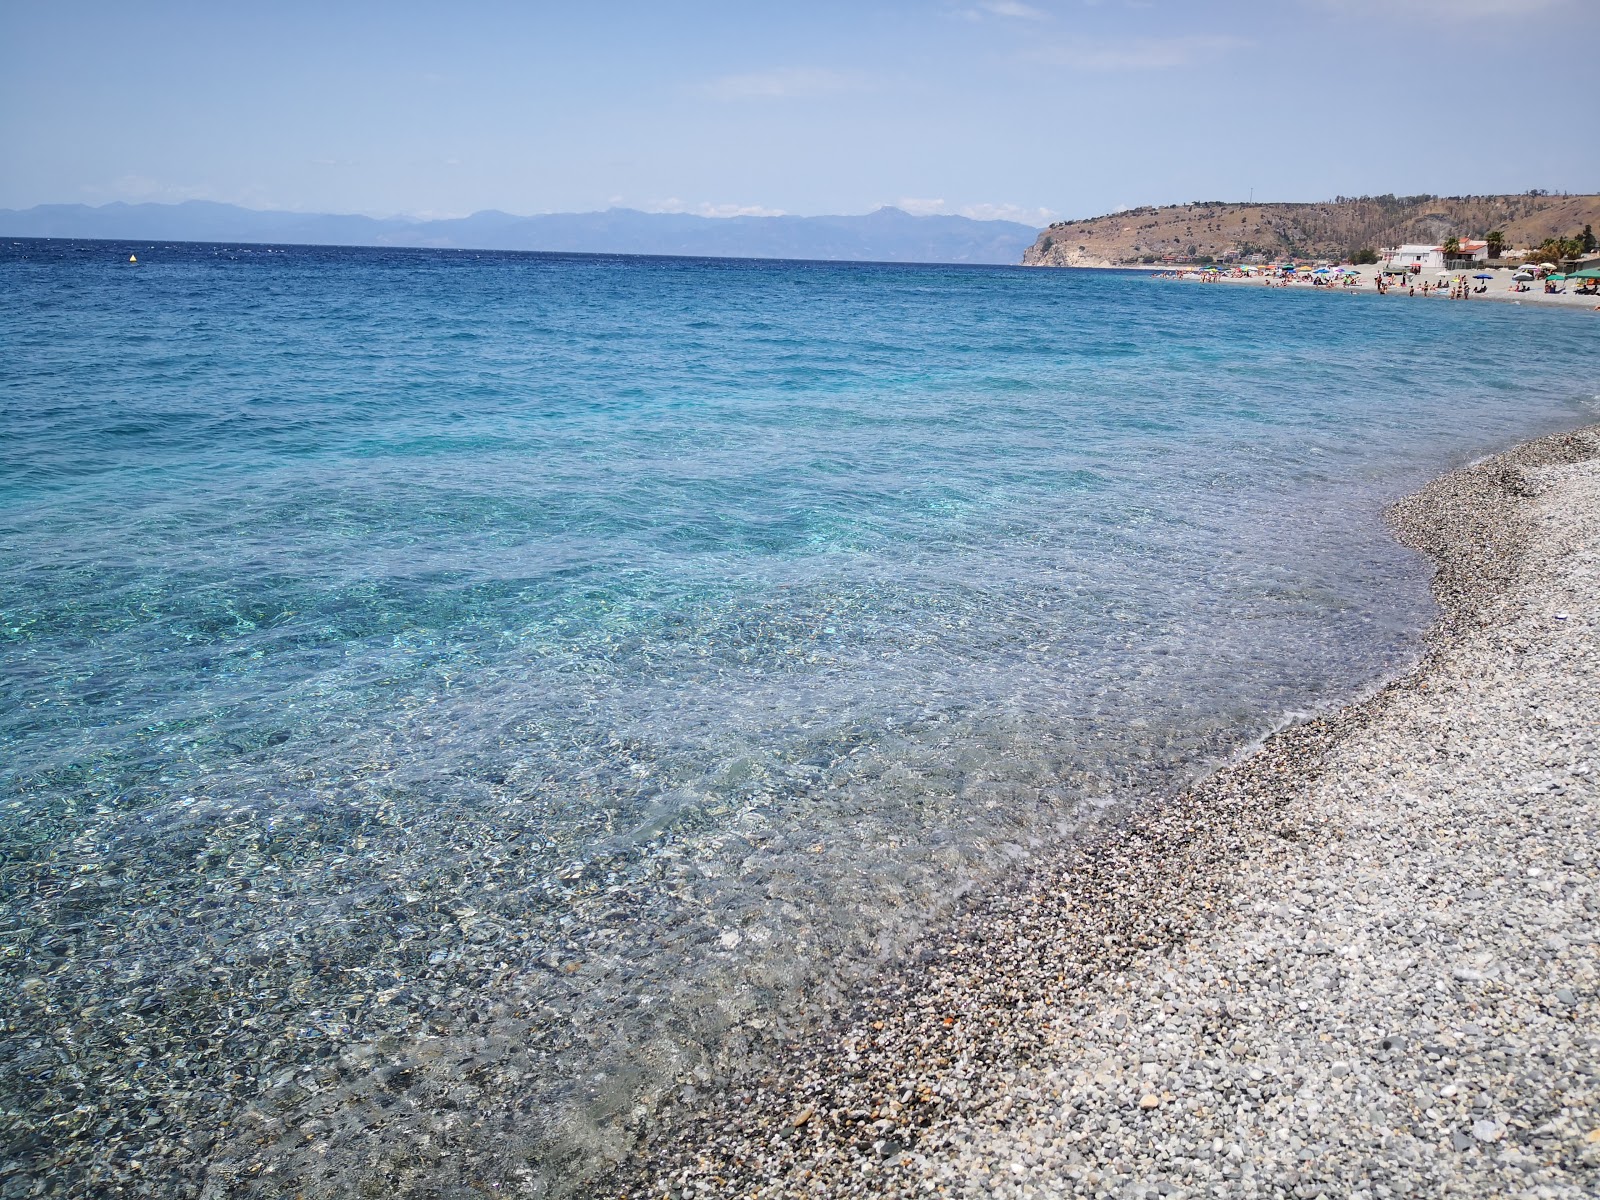 Foto af Spiaggia Saline Ioniche II - populært sted blandt afslapningskendere